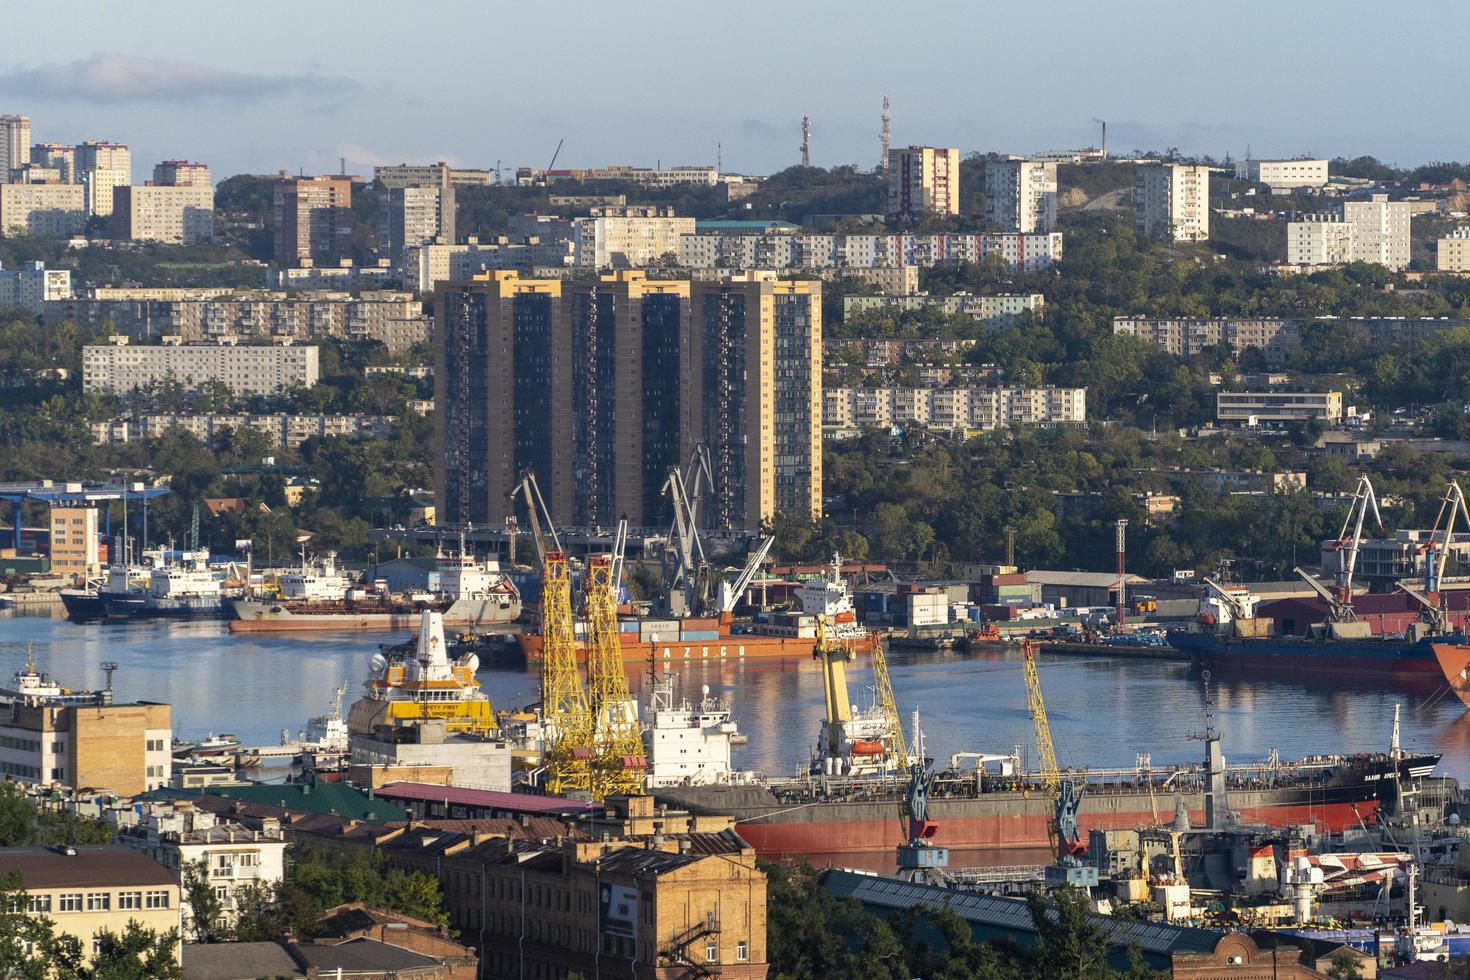 wladiwostok, russland-19. september 2021-städtische landschaft mit blick auf die goldene hornbucht foto